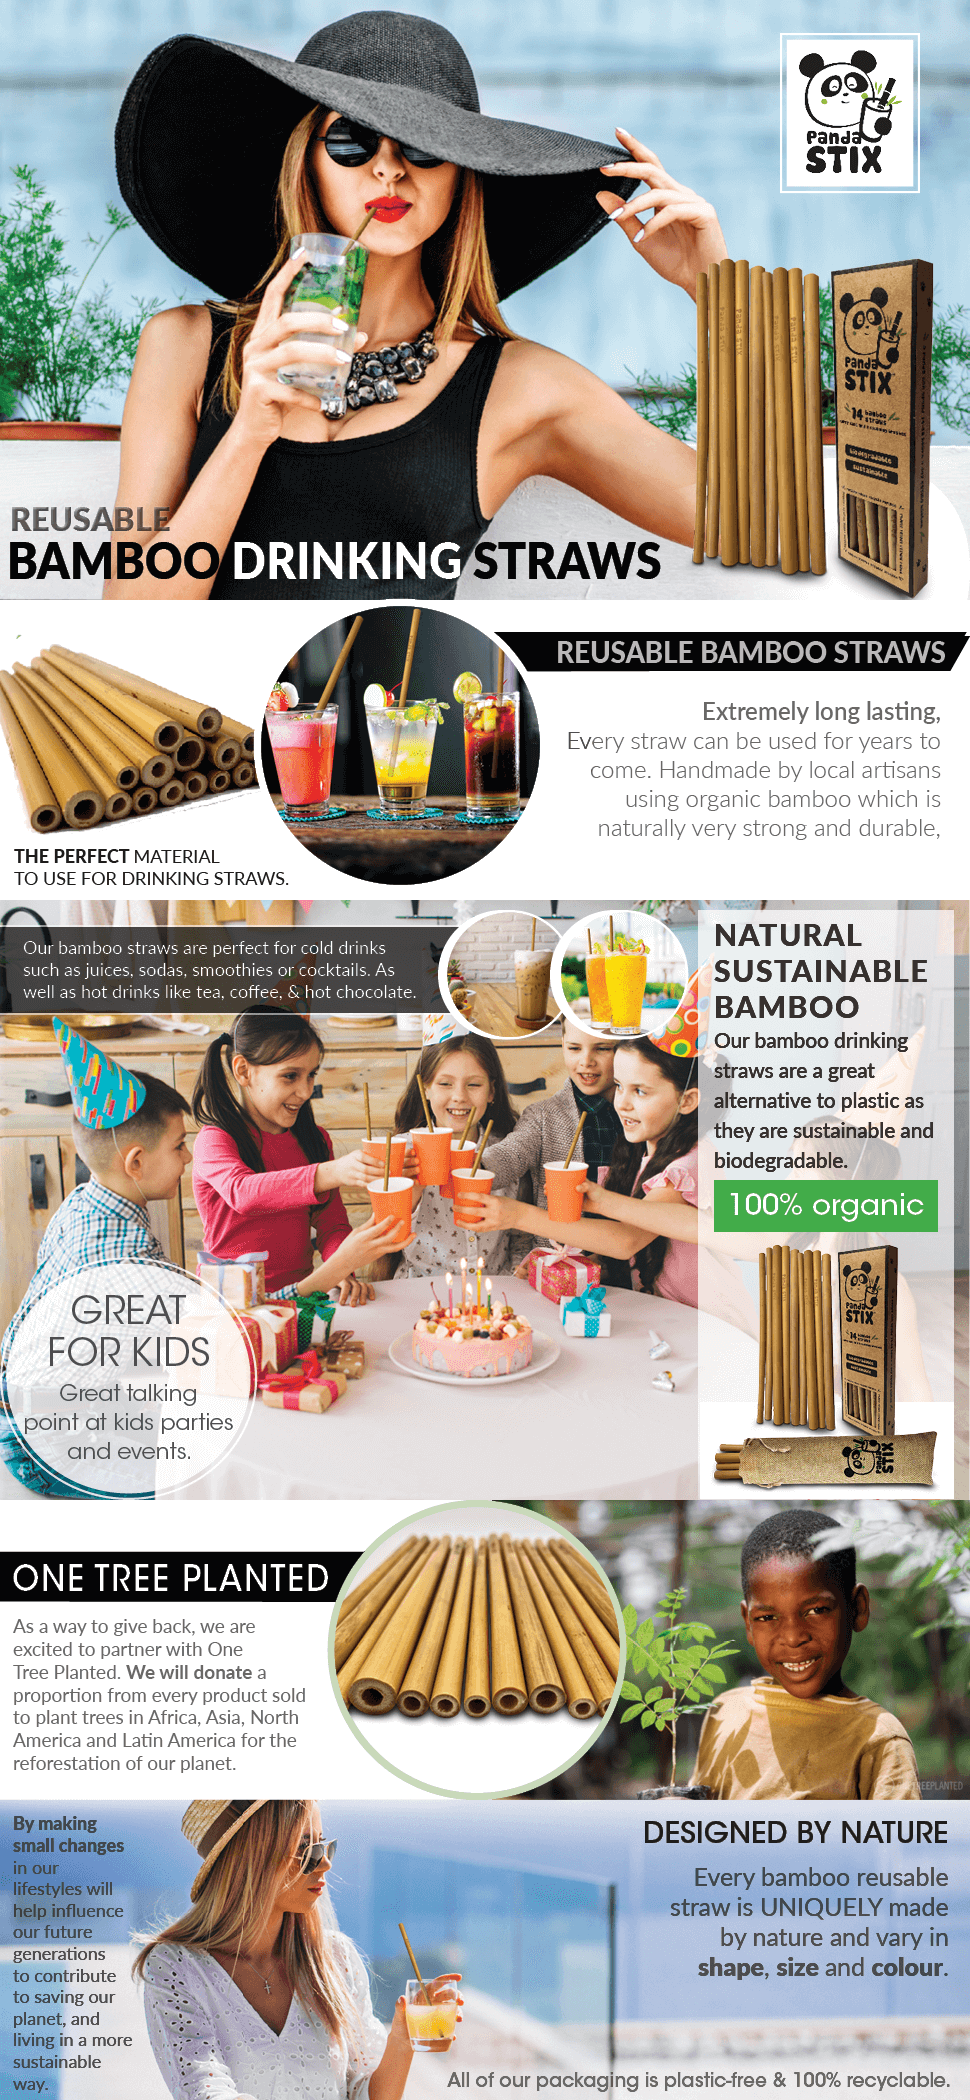 Reusable Bamboo Straws 7.7 inches — STRAWTOPIA